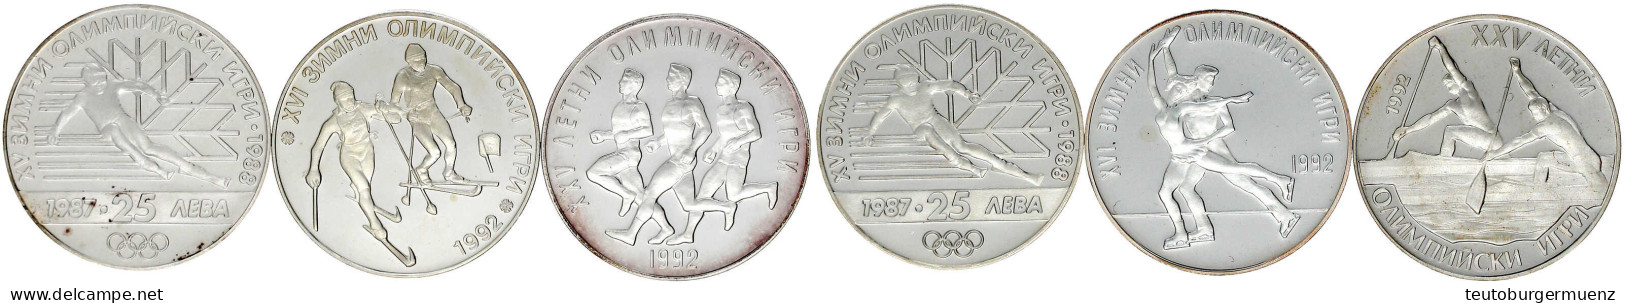 6 X 25 Leva Silbergedenkmünzen Zu Olympiaden Aus 1987 Bis 1990. 2 X Abfahrtsläufer 1987 (KM 160), Zweier-Kanadier 1989 ( - Bulgaria